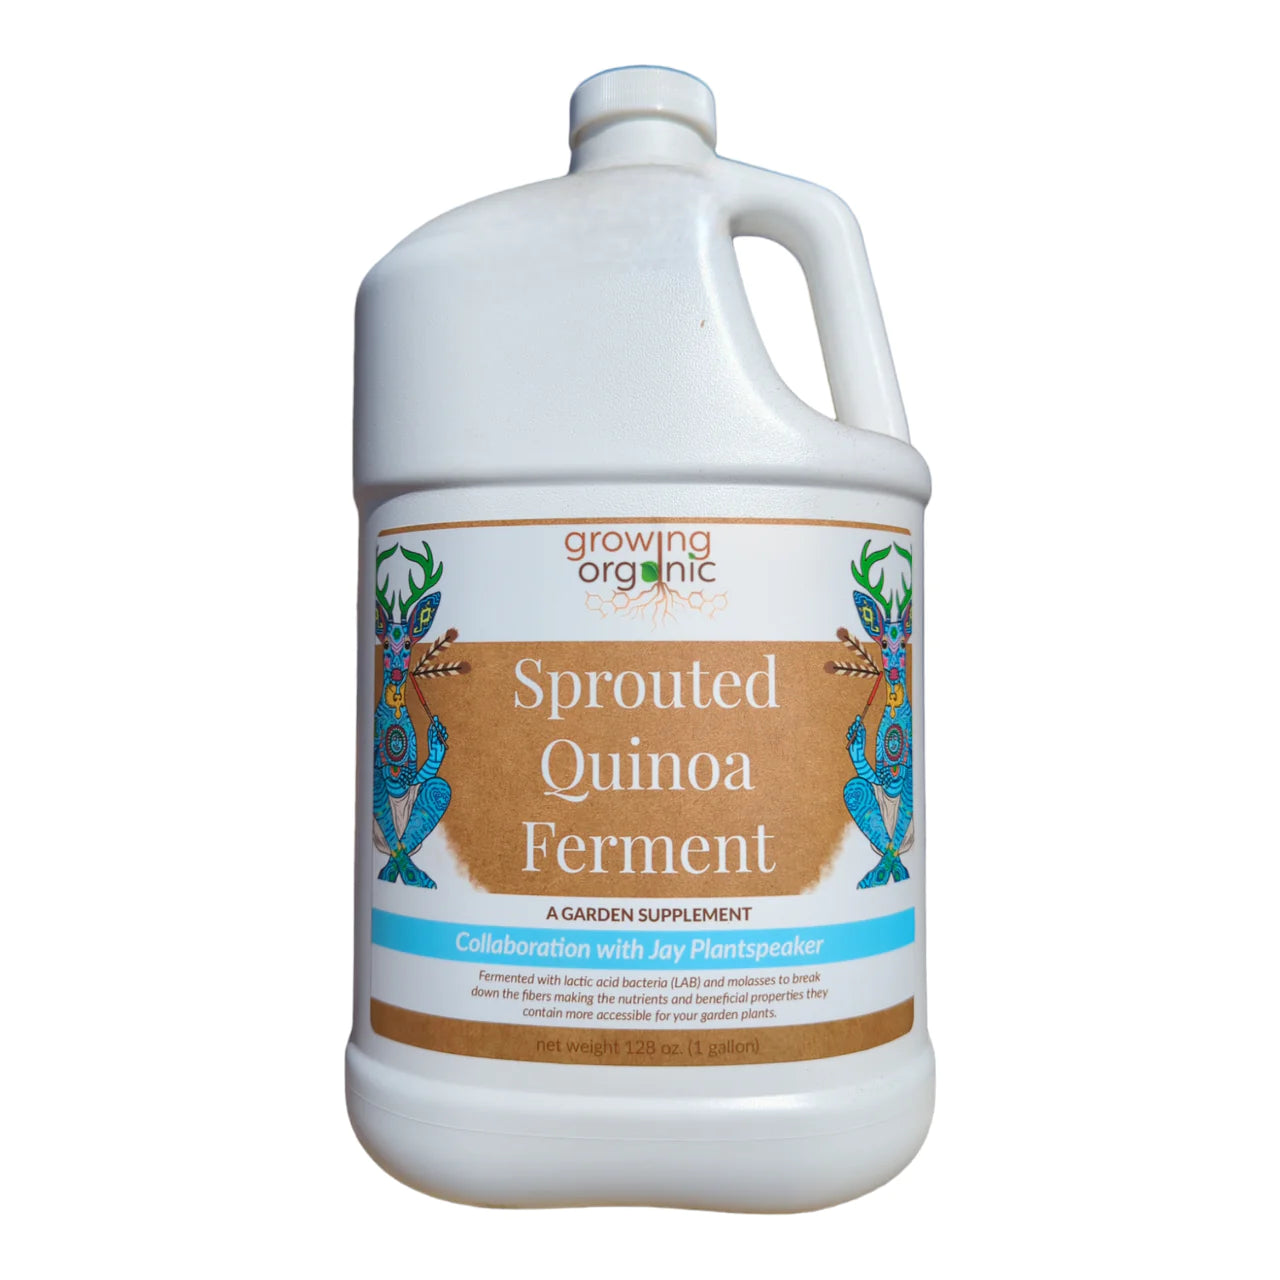 Growing Organic Sprouted Quinoa Ferment (Garden Supplement)